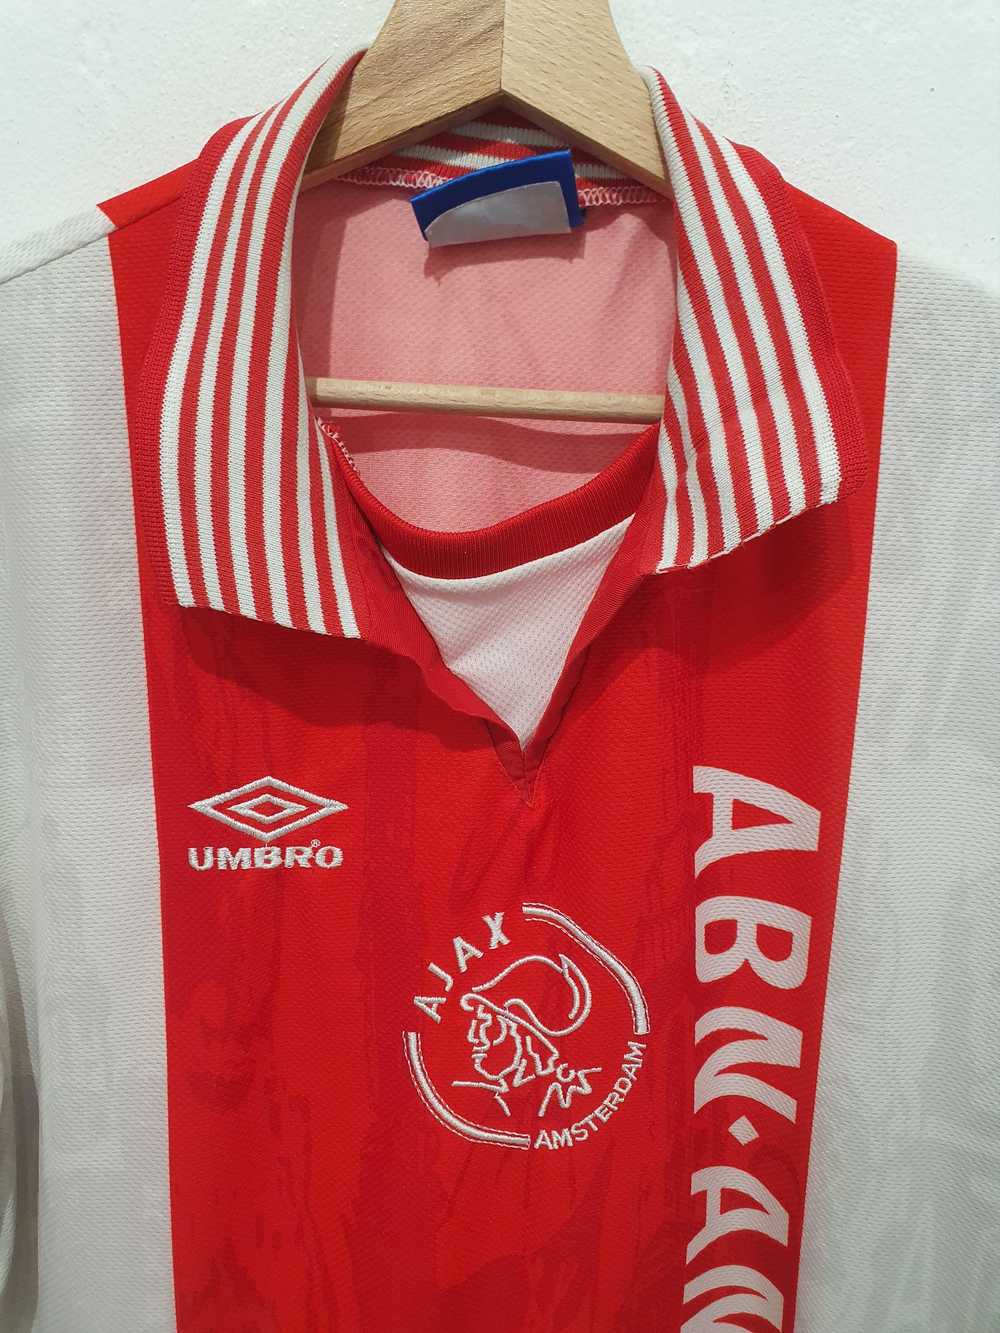 Jersey × Soccer Jersey × Sportswear AJAX AMSTERDA… - image 3